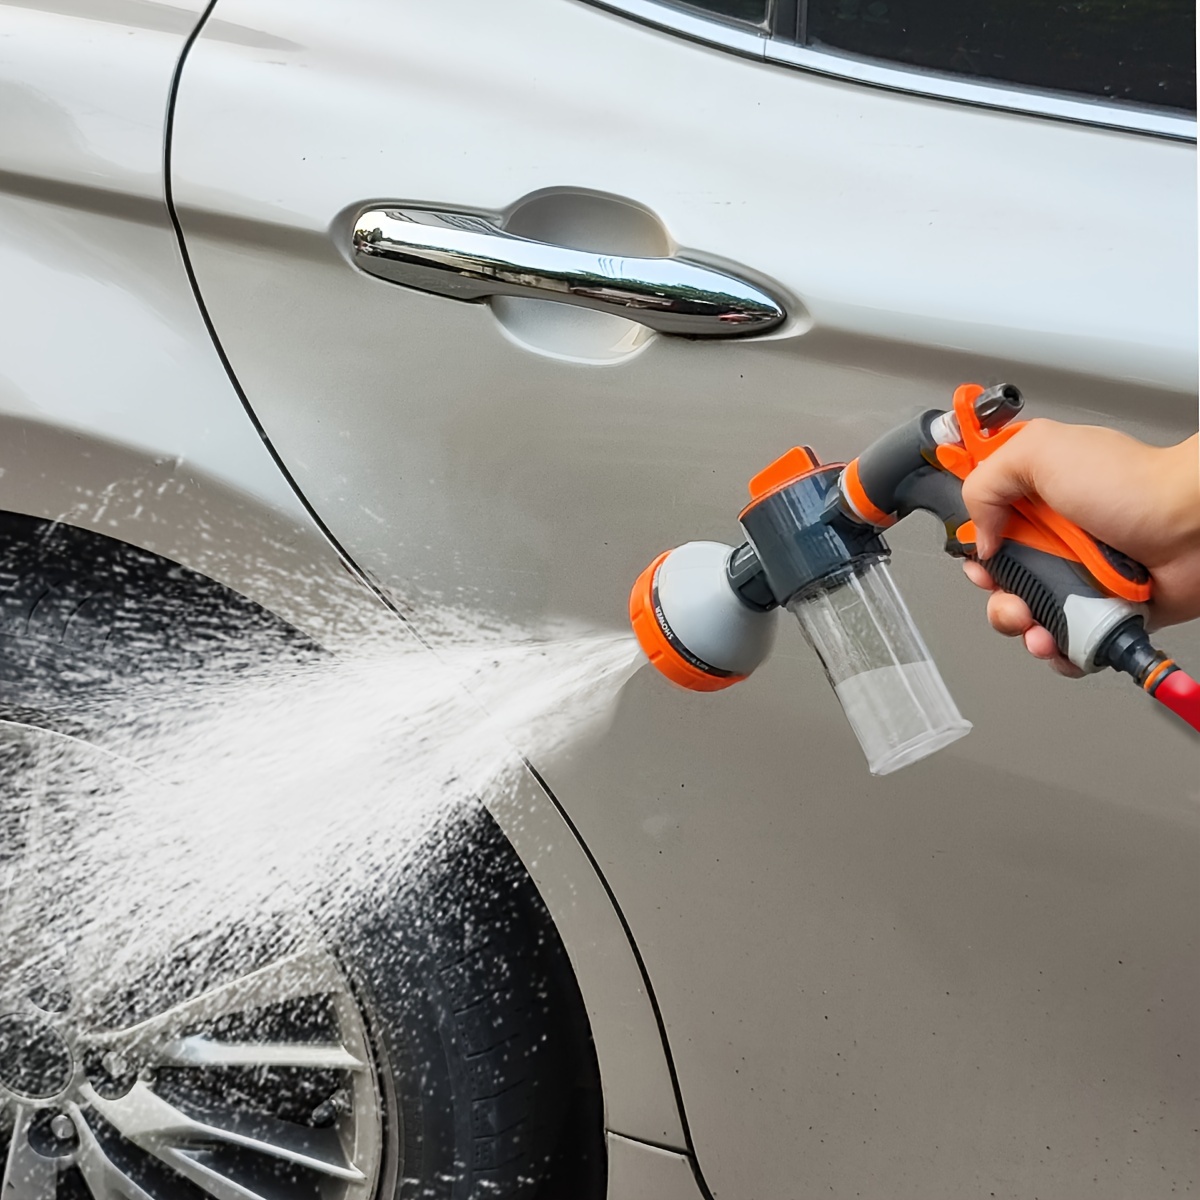 Autowasch Spray - Kostenlose Rückgabe Innerhalb Von 90 Tagen